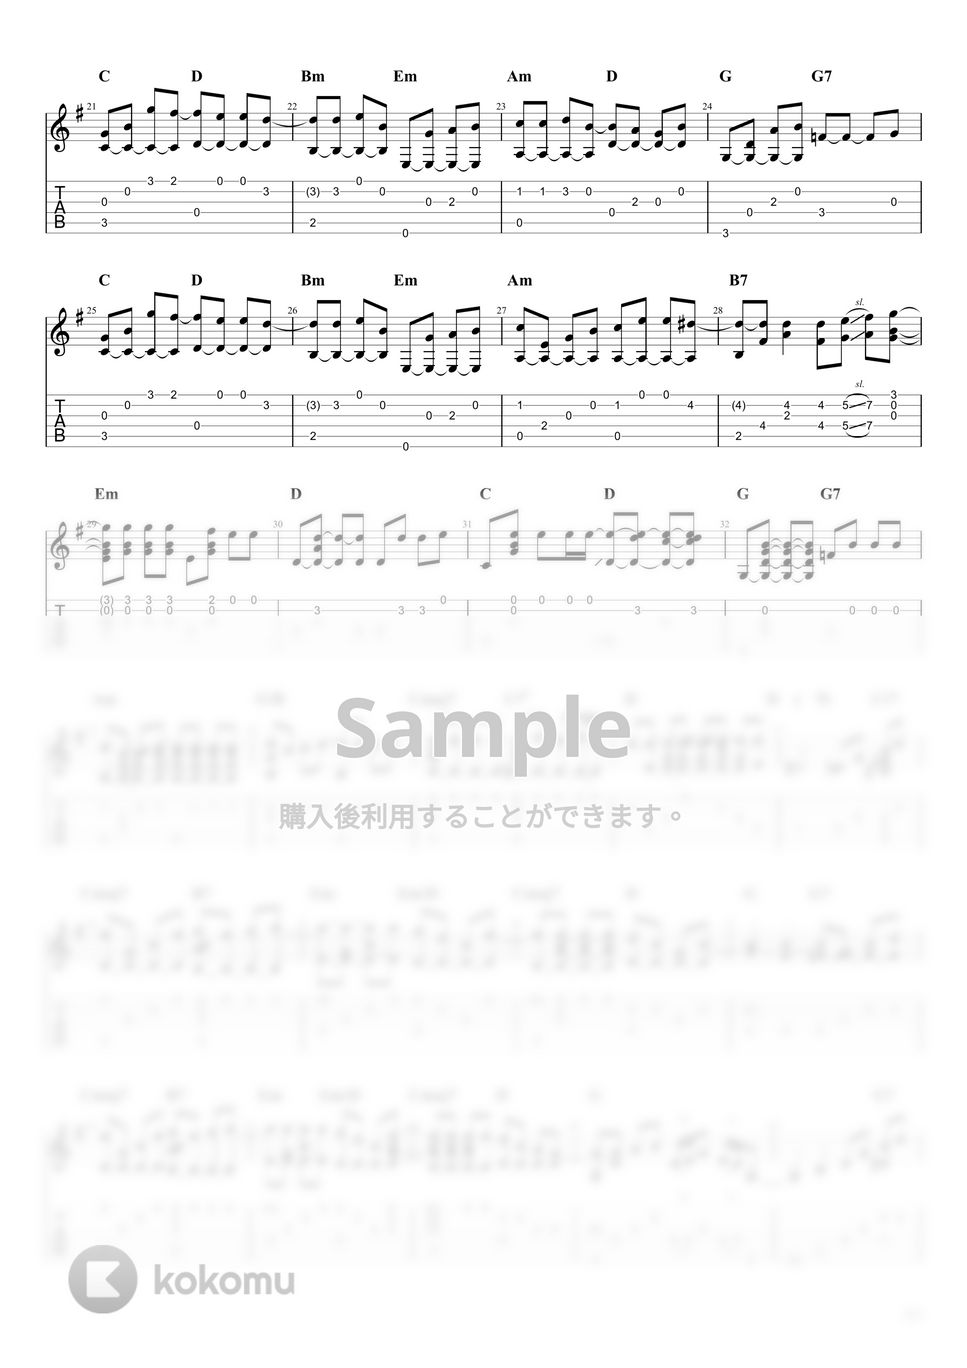 スガシカオ - 夜空ノムコウ (ソロギターアレンジ) by しゅうじ